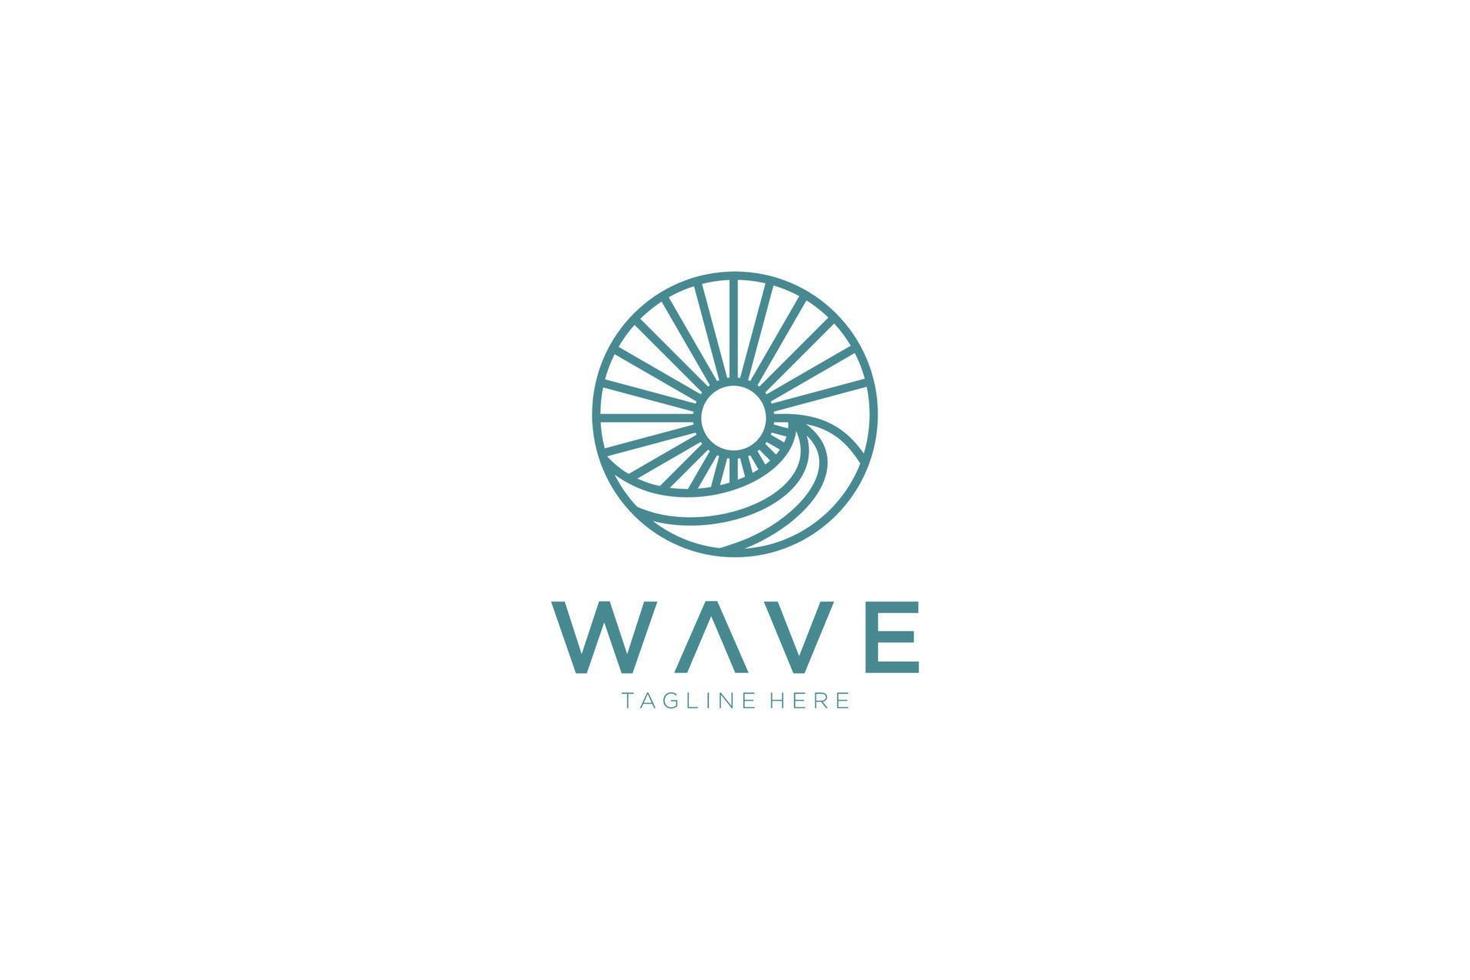 logo de onda de mar y sol circular vintage abstracto. elemento de plantilla de diseño de logotipo de vector plano.